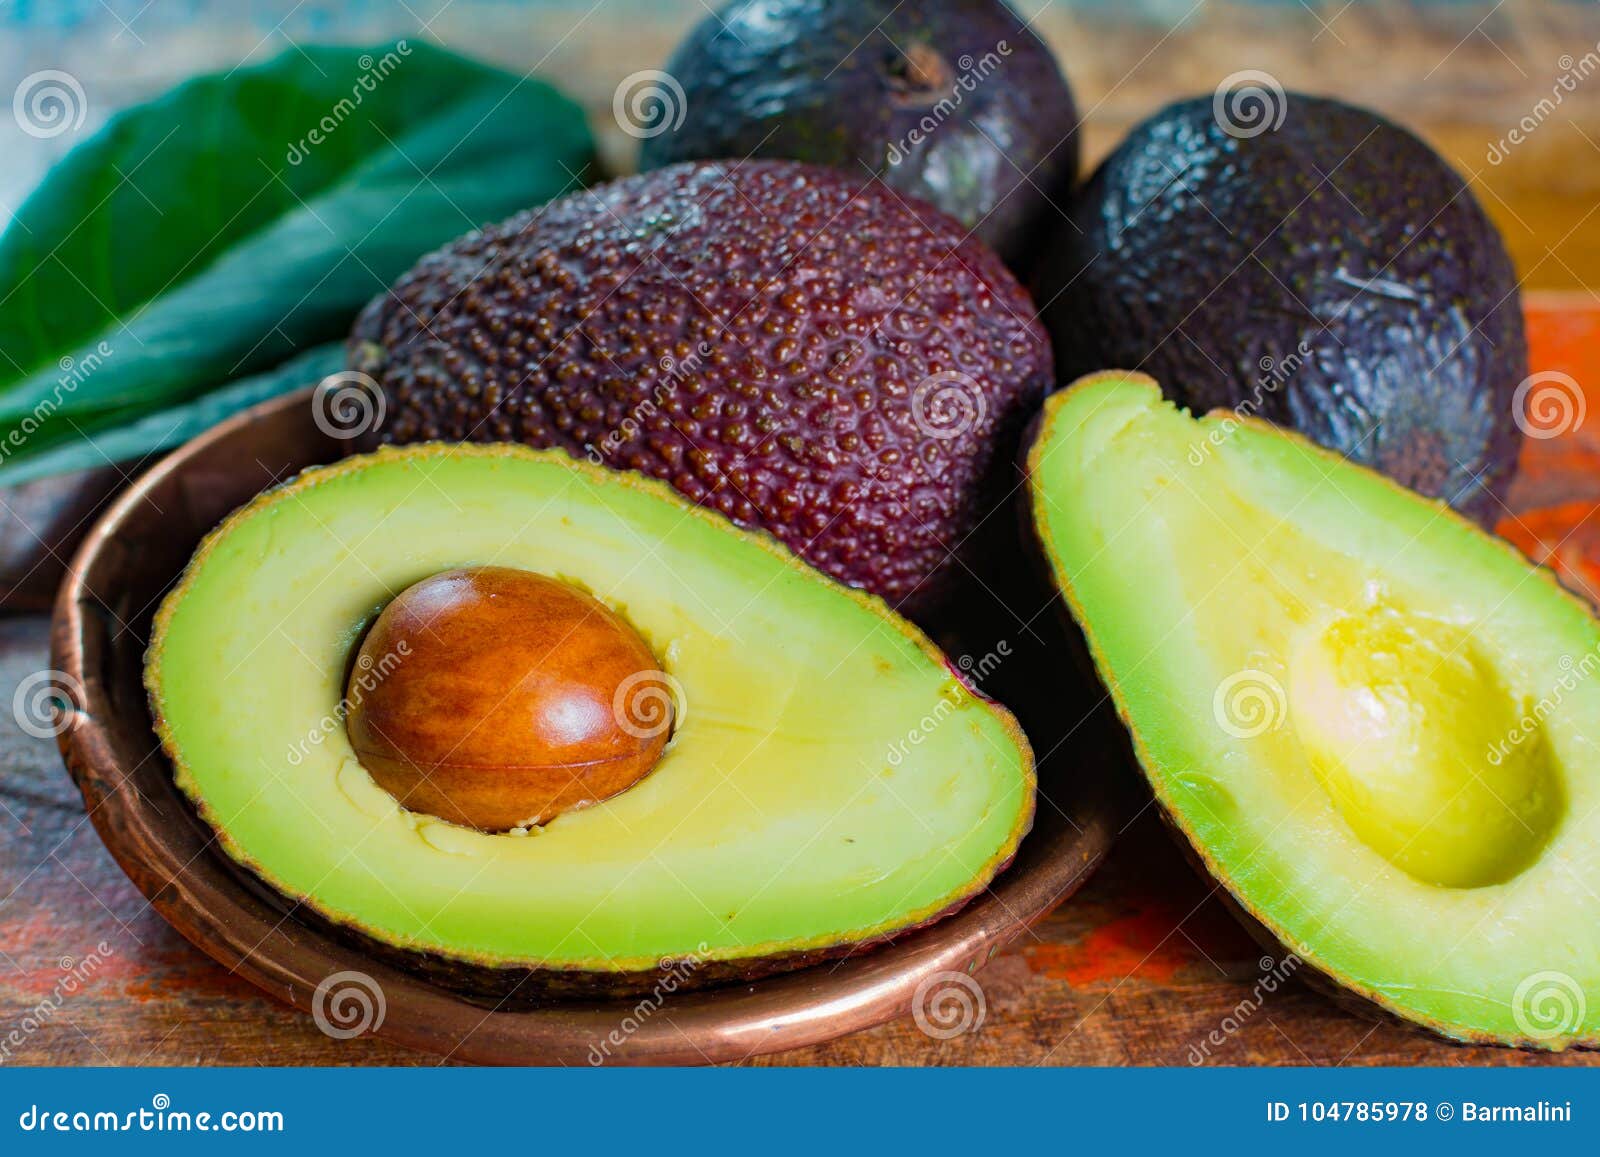 healthy vegetarian food Ã¢â¬â green ripe avocado, new harvest, wit